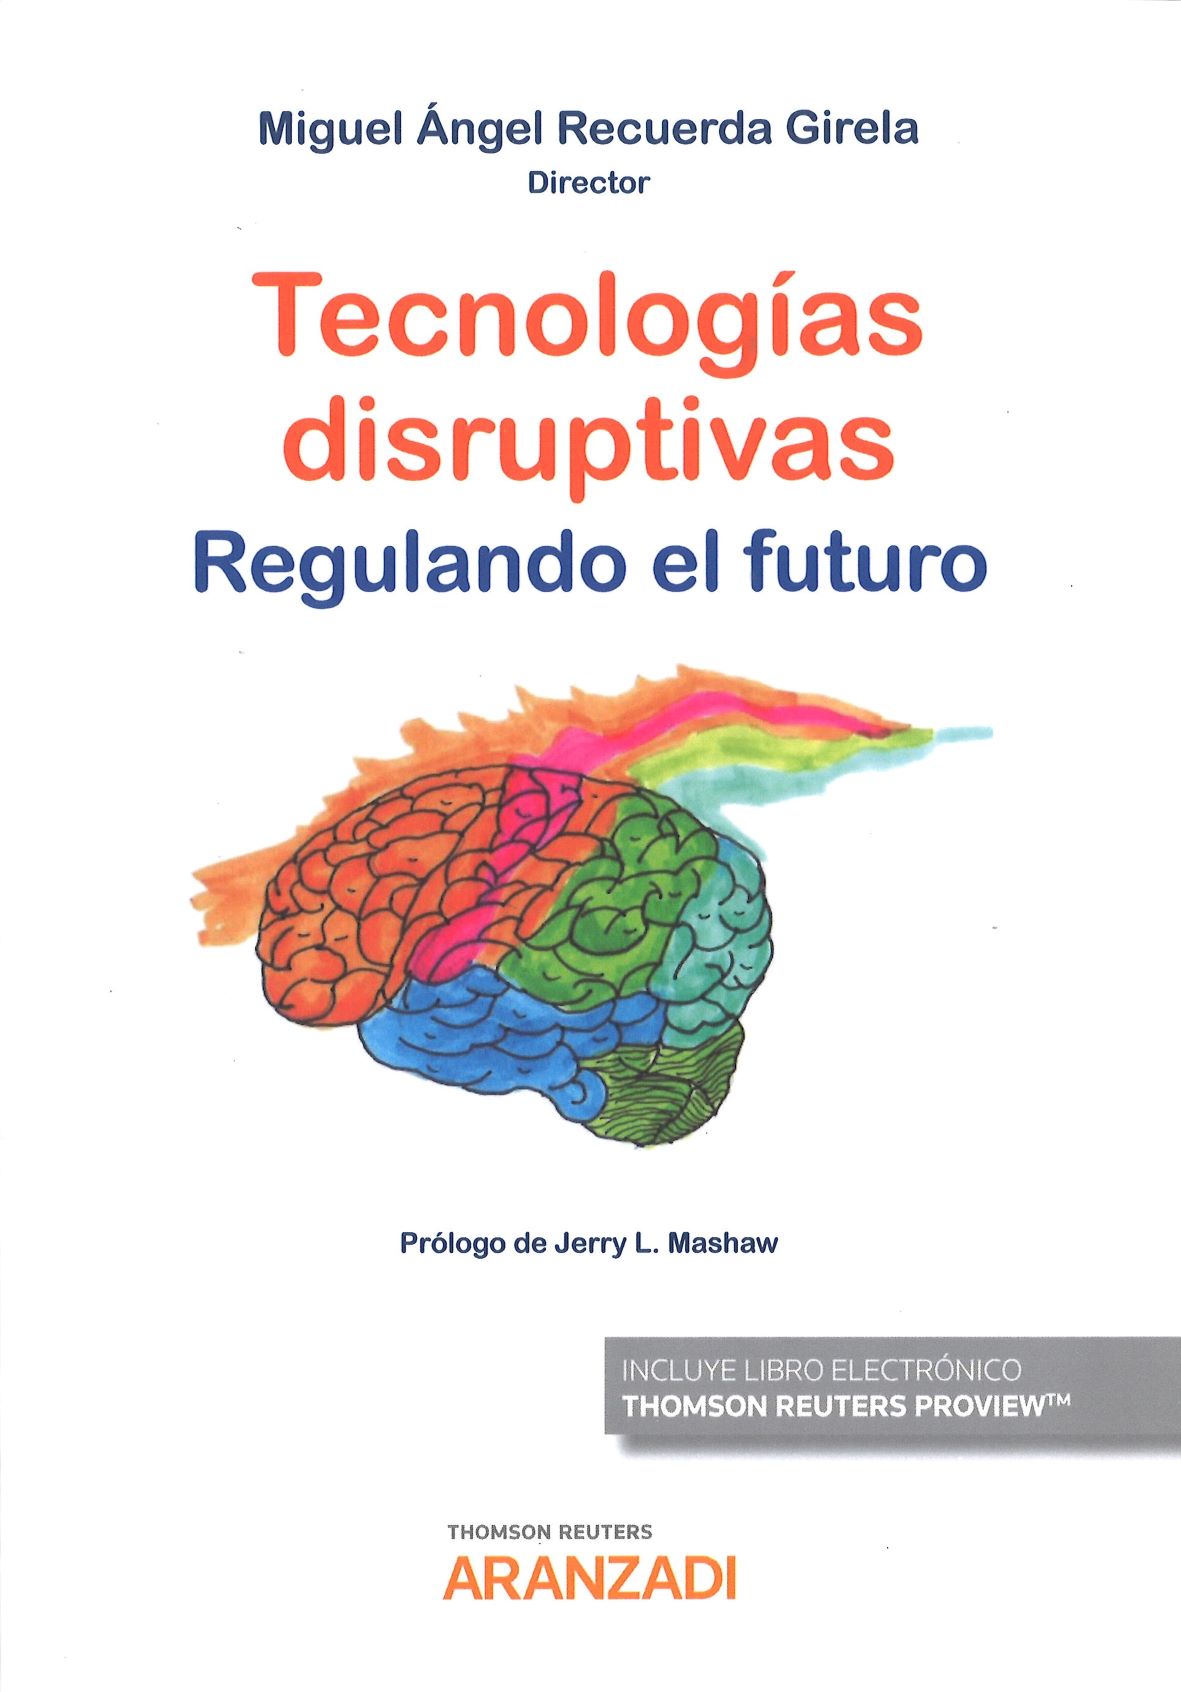 Imagen de portada del libro Tecnologías disruptivas